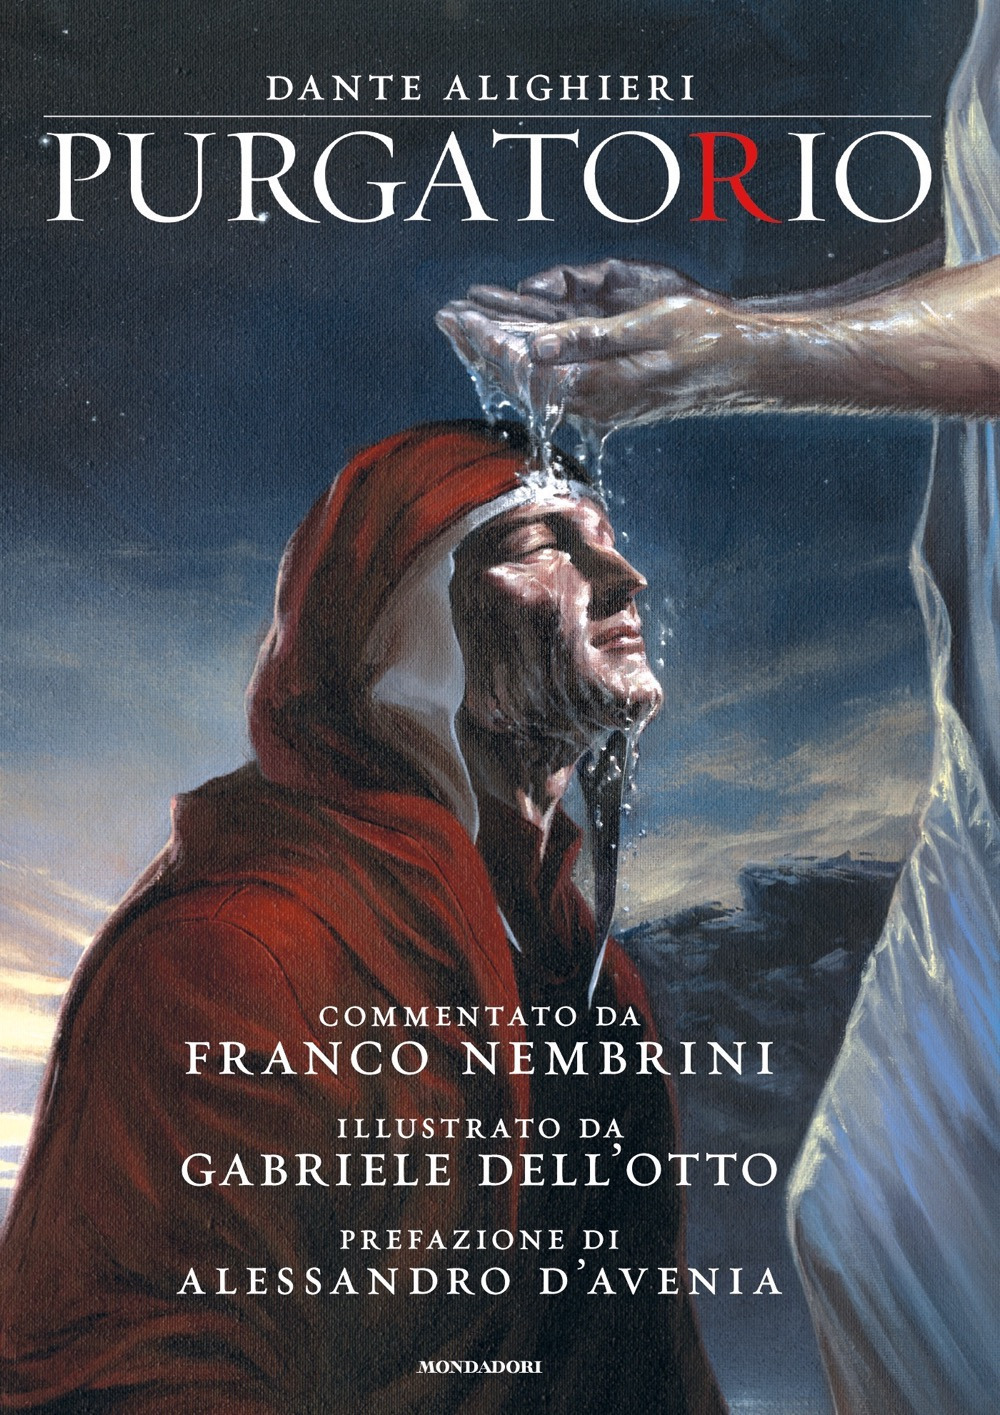 Libri Dante Alighieri - Purgatorio NUOVO SIGILLATO, EDIZIONE DEL 12/05/2020 SUBITO DISPONIBILE